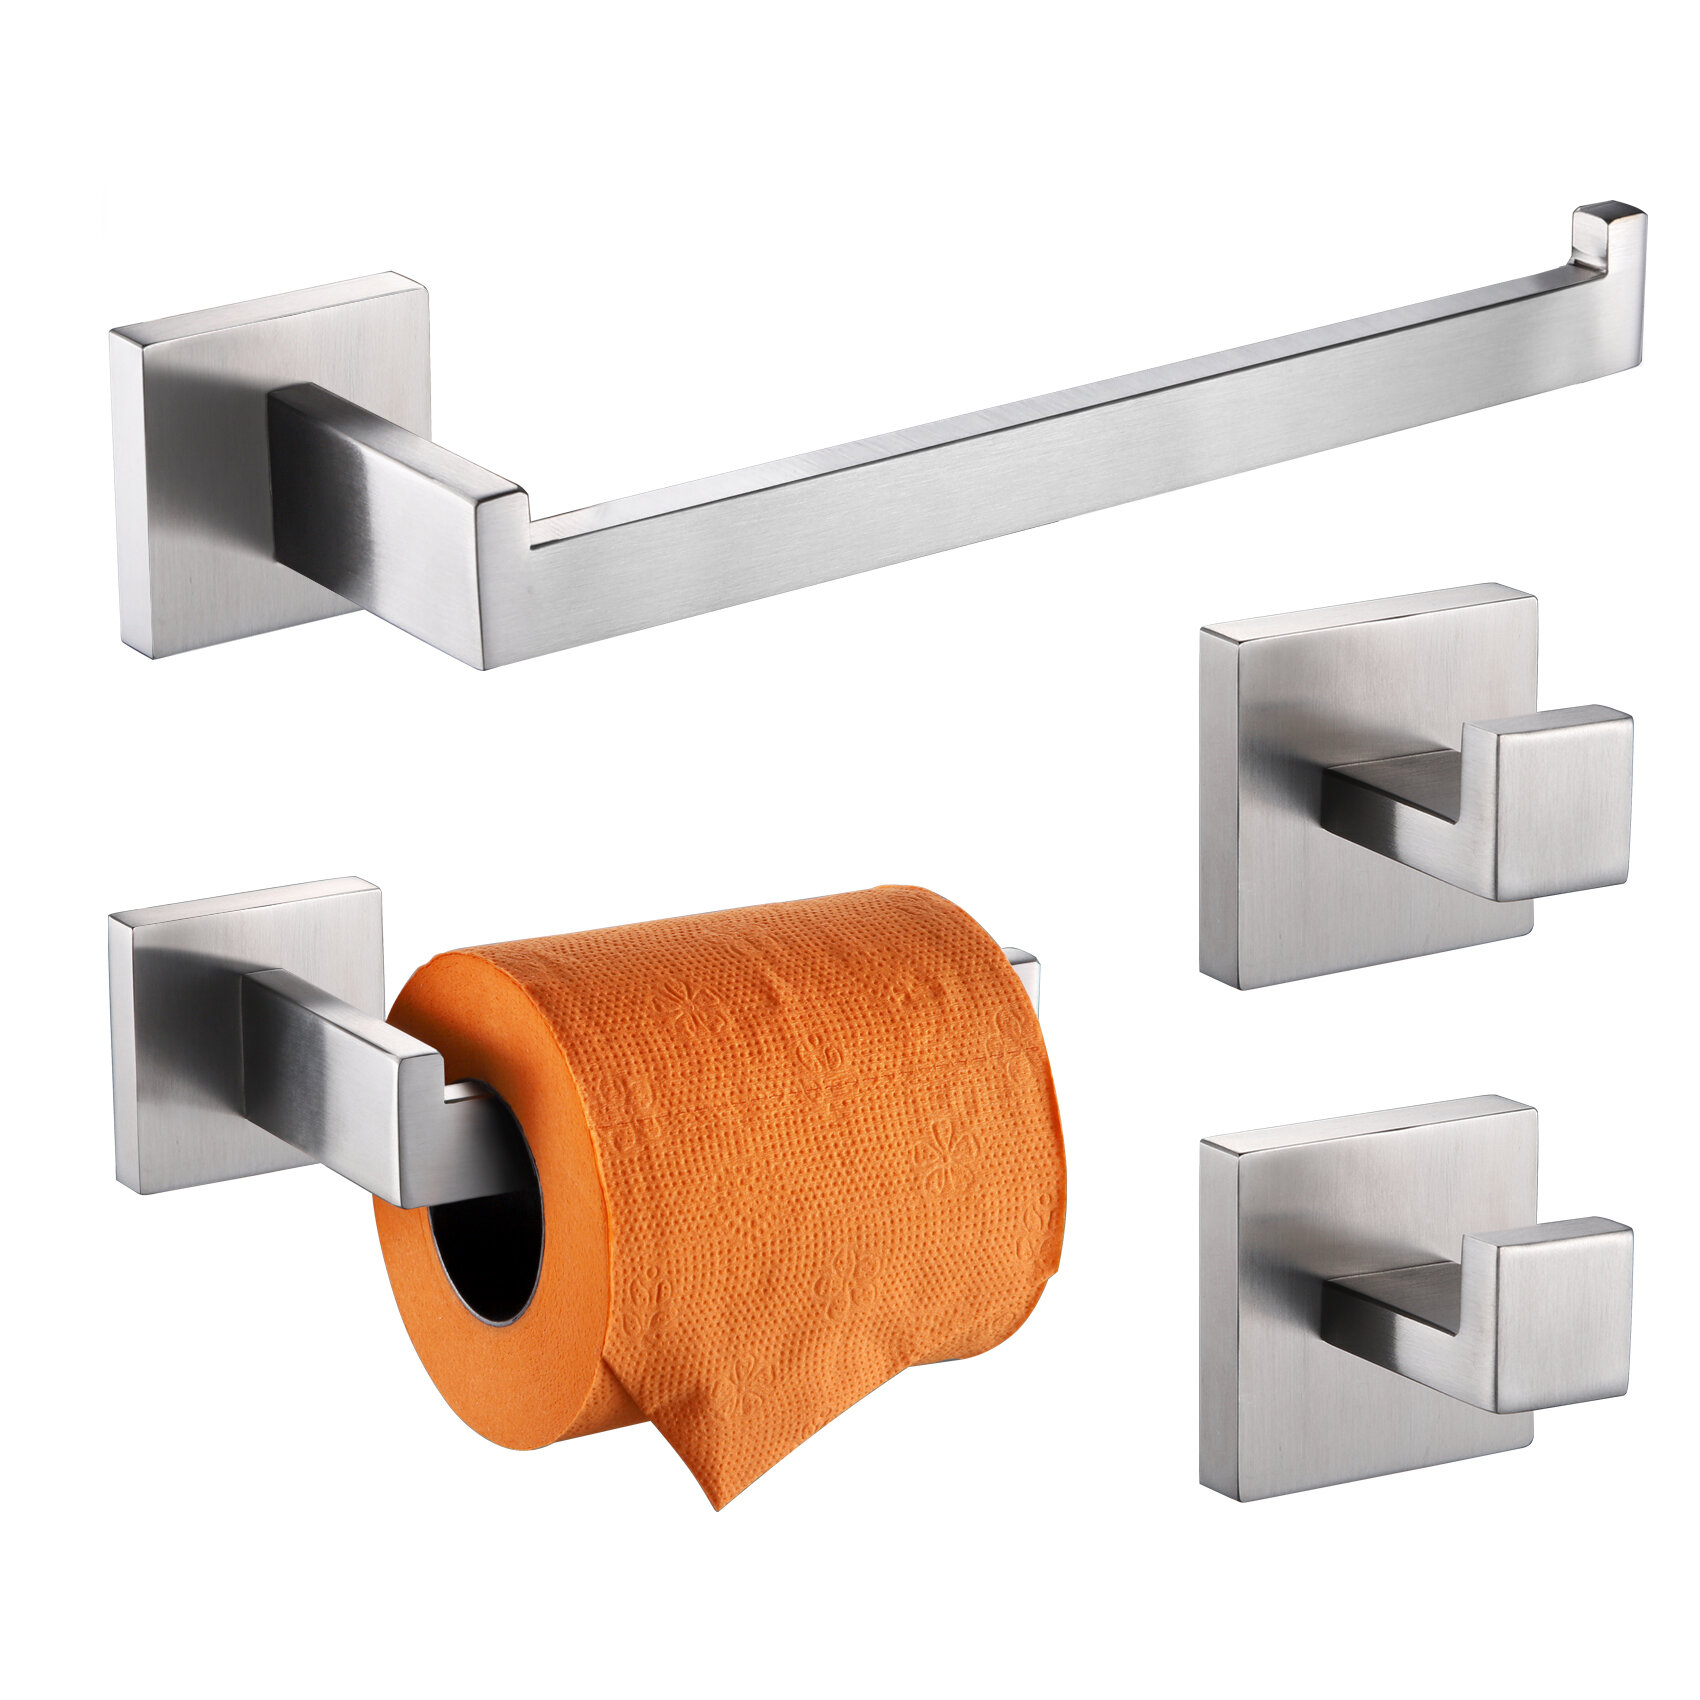 https://assets.wfcdn.com/im/60552086/compr-r85/1778/177880599/towel-holder-set-4-piece-bathroom-hardware-set.jpg